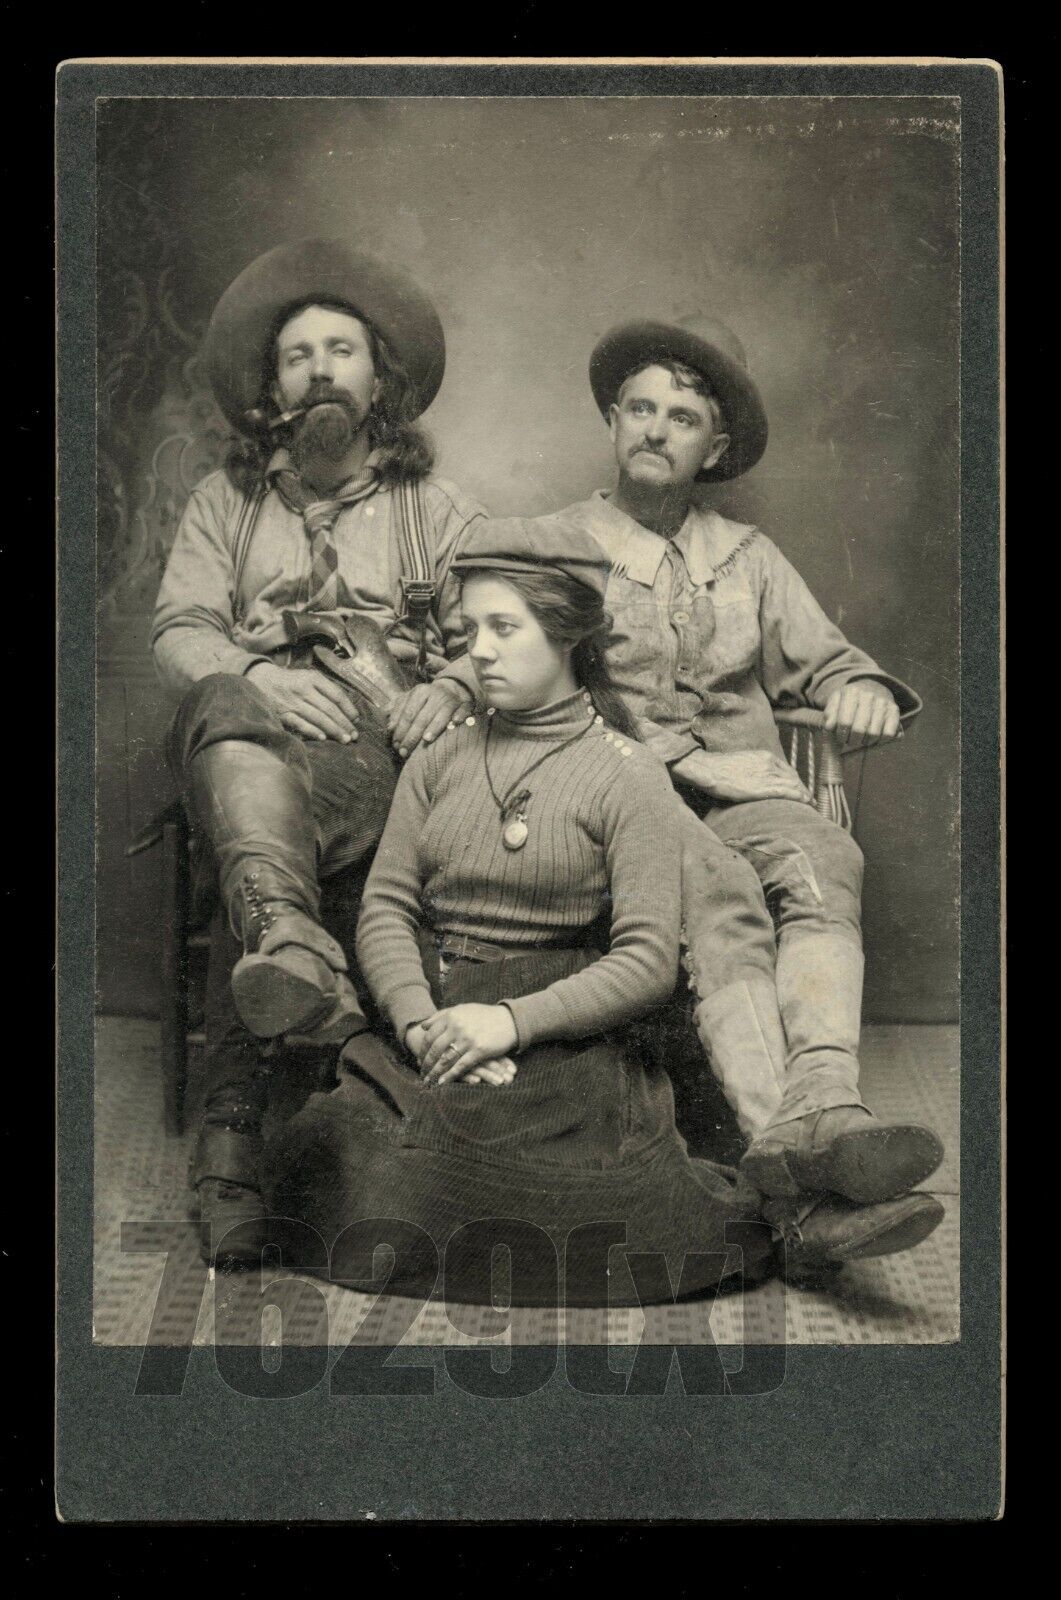 Excellent Pueblo Colorado Group Western Ranchers Cowboys, Armed 1890s Photo Rare